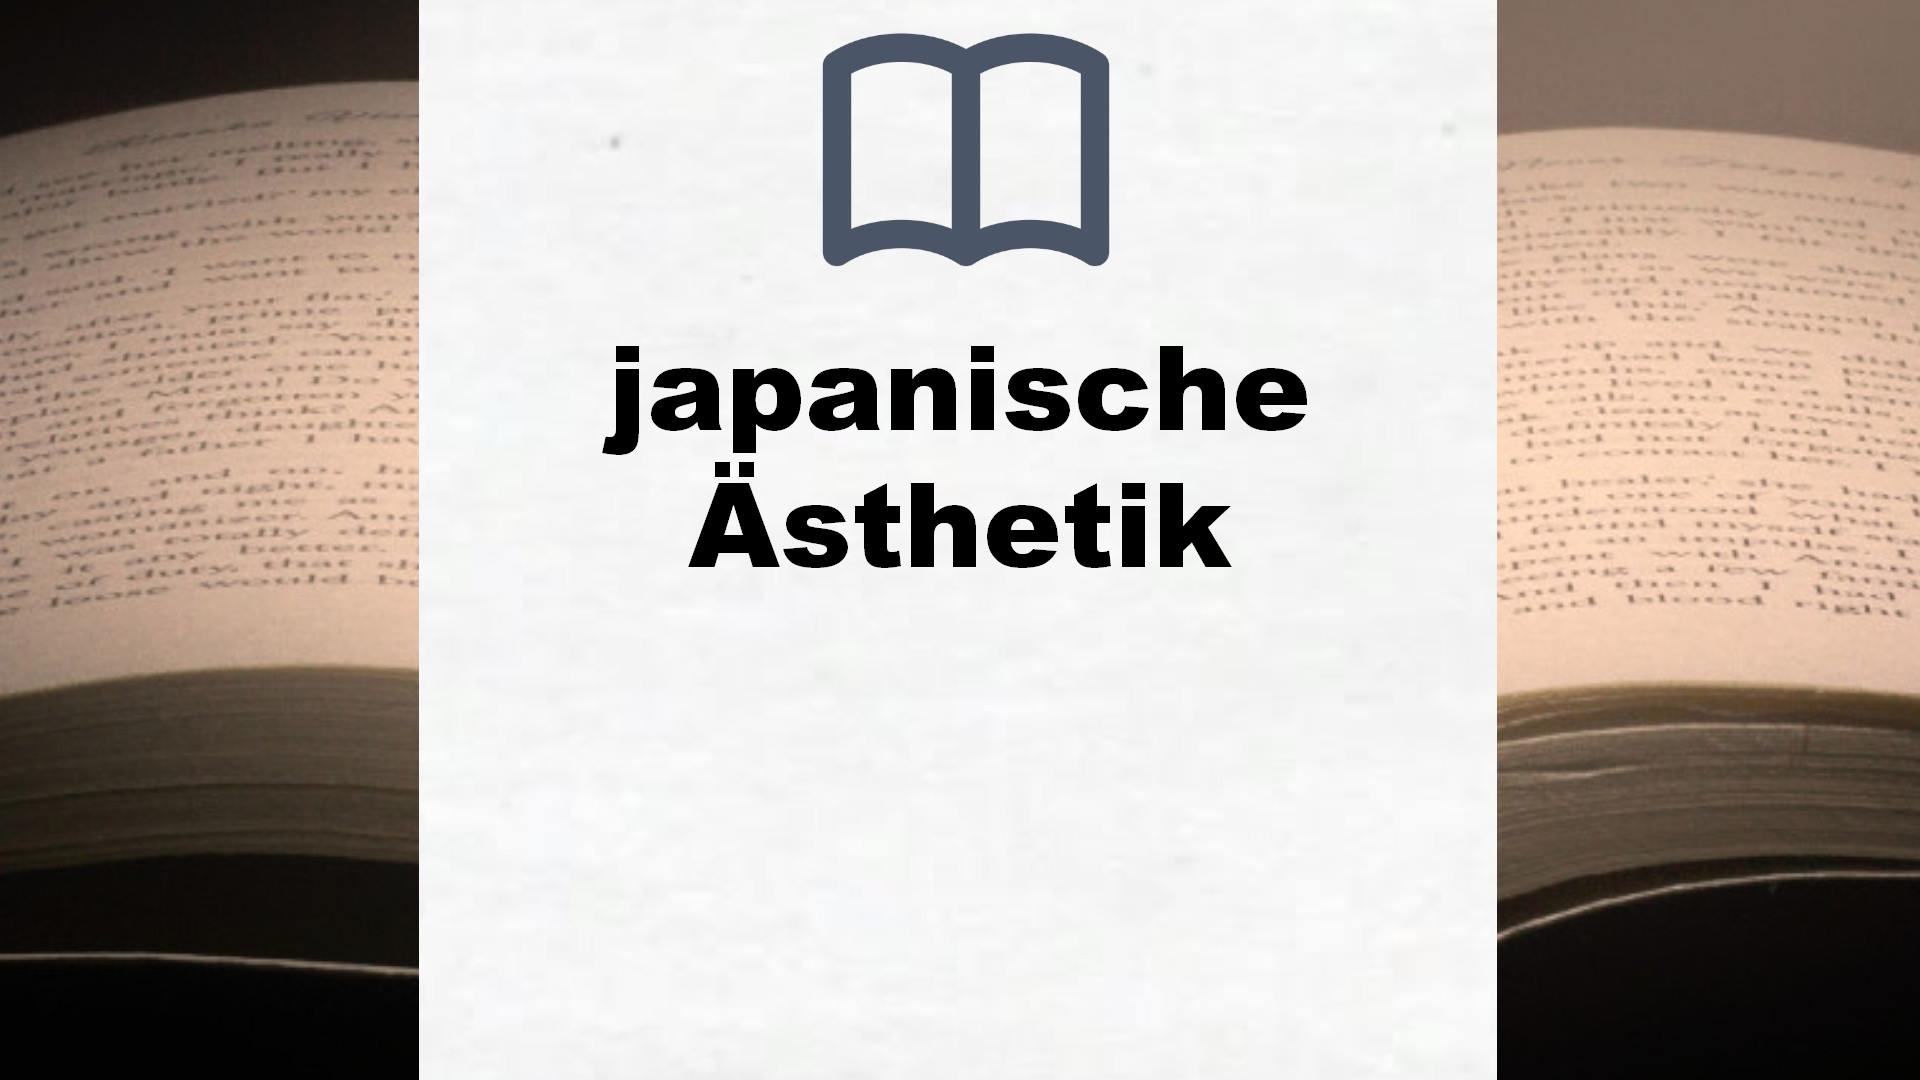 Bücher über japanische Ästhetik